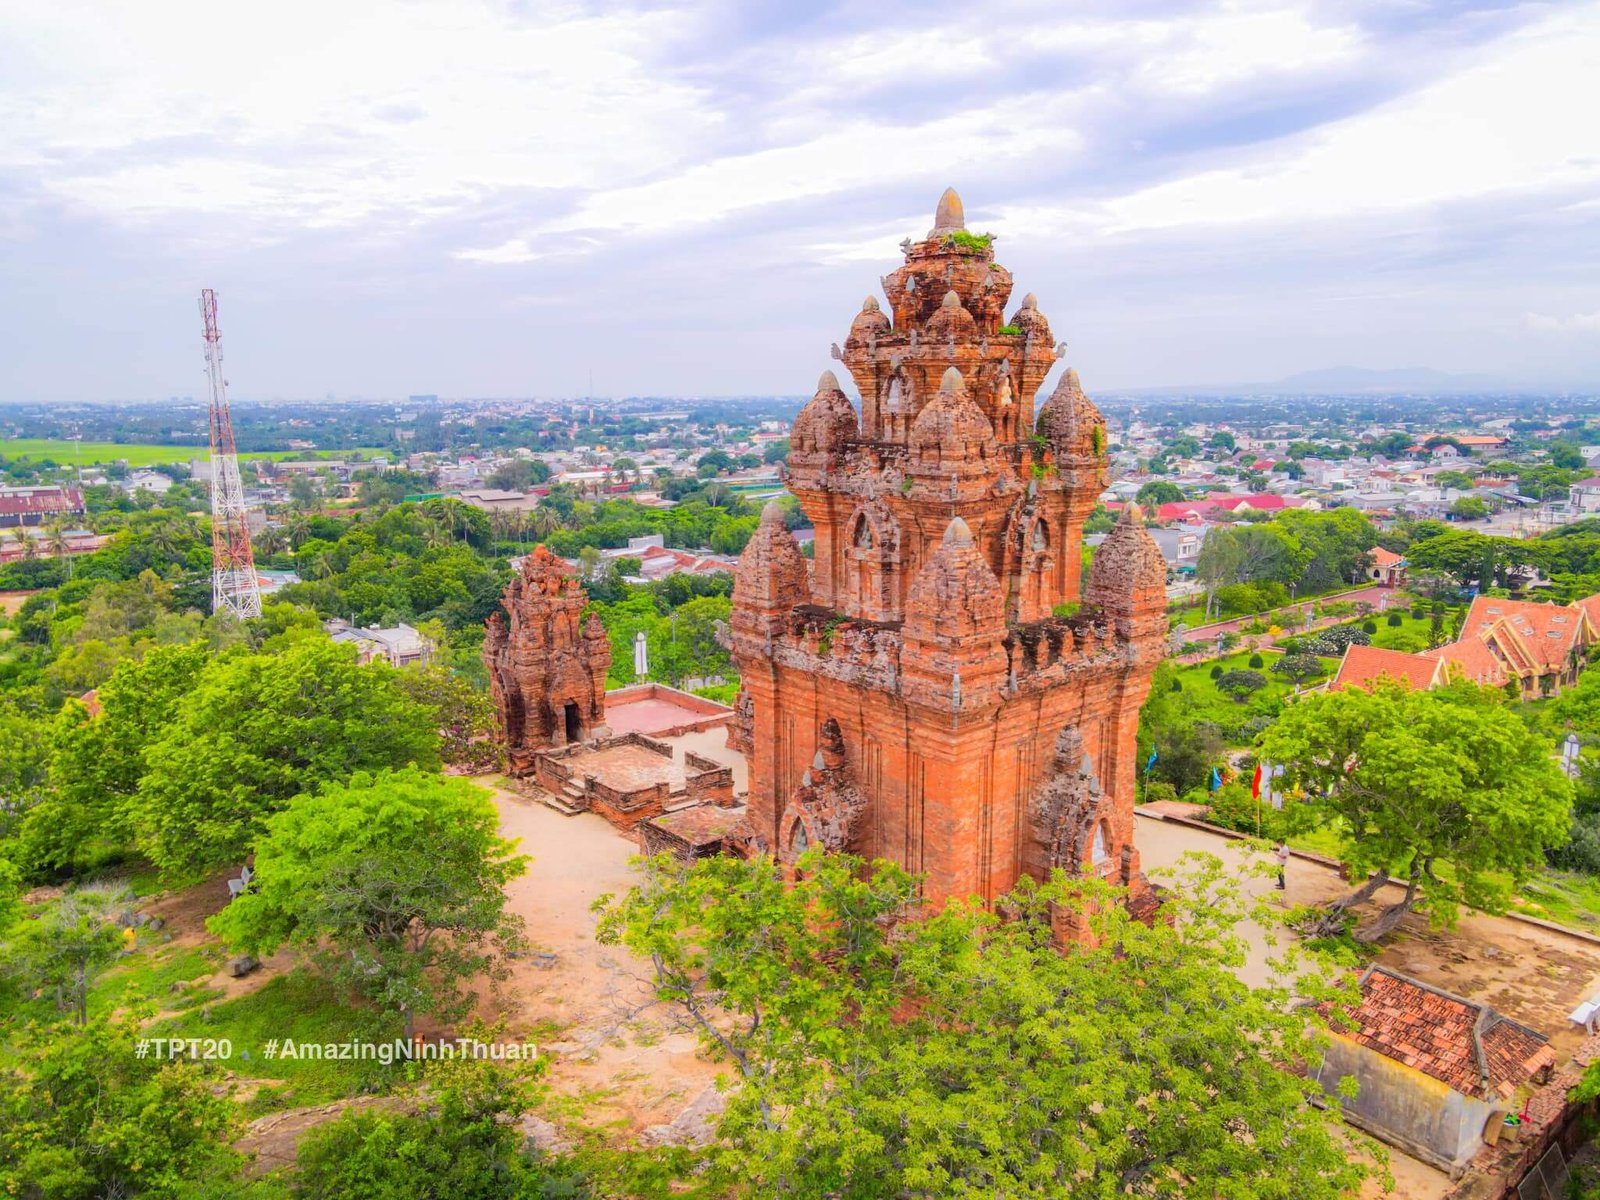 Tổng thể công trình tháp Po Klong Garai được xây dựng trên đỉnh núi Trầu linh thiêng. Ảnh: Trần Phương Trình